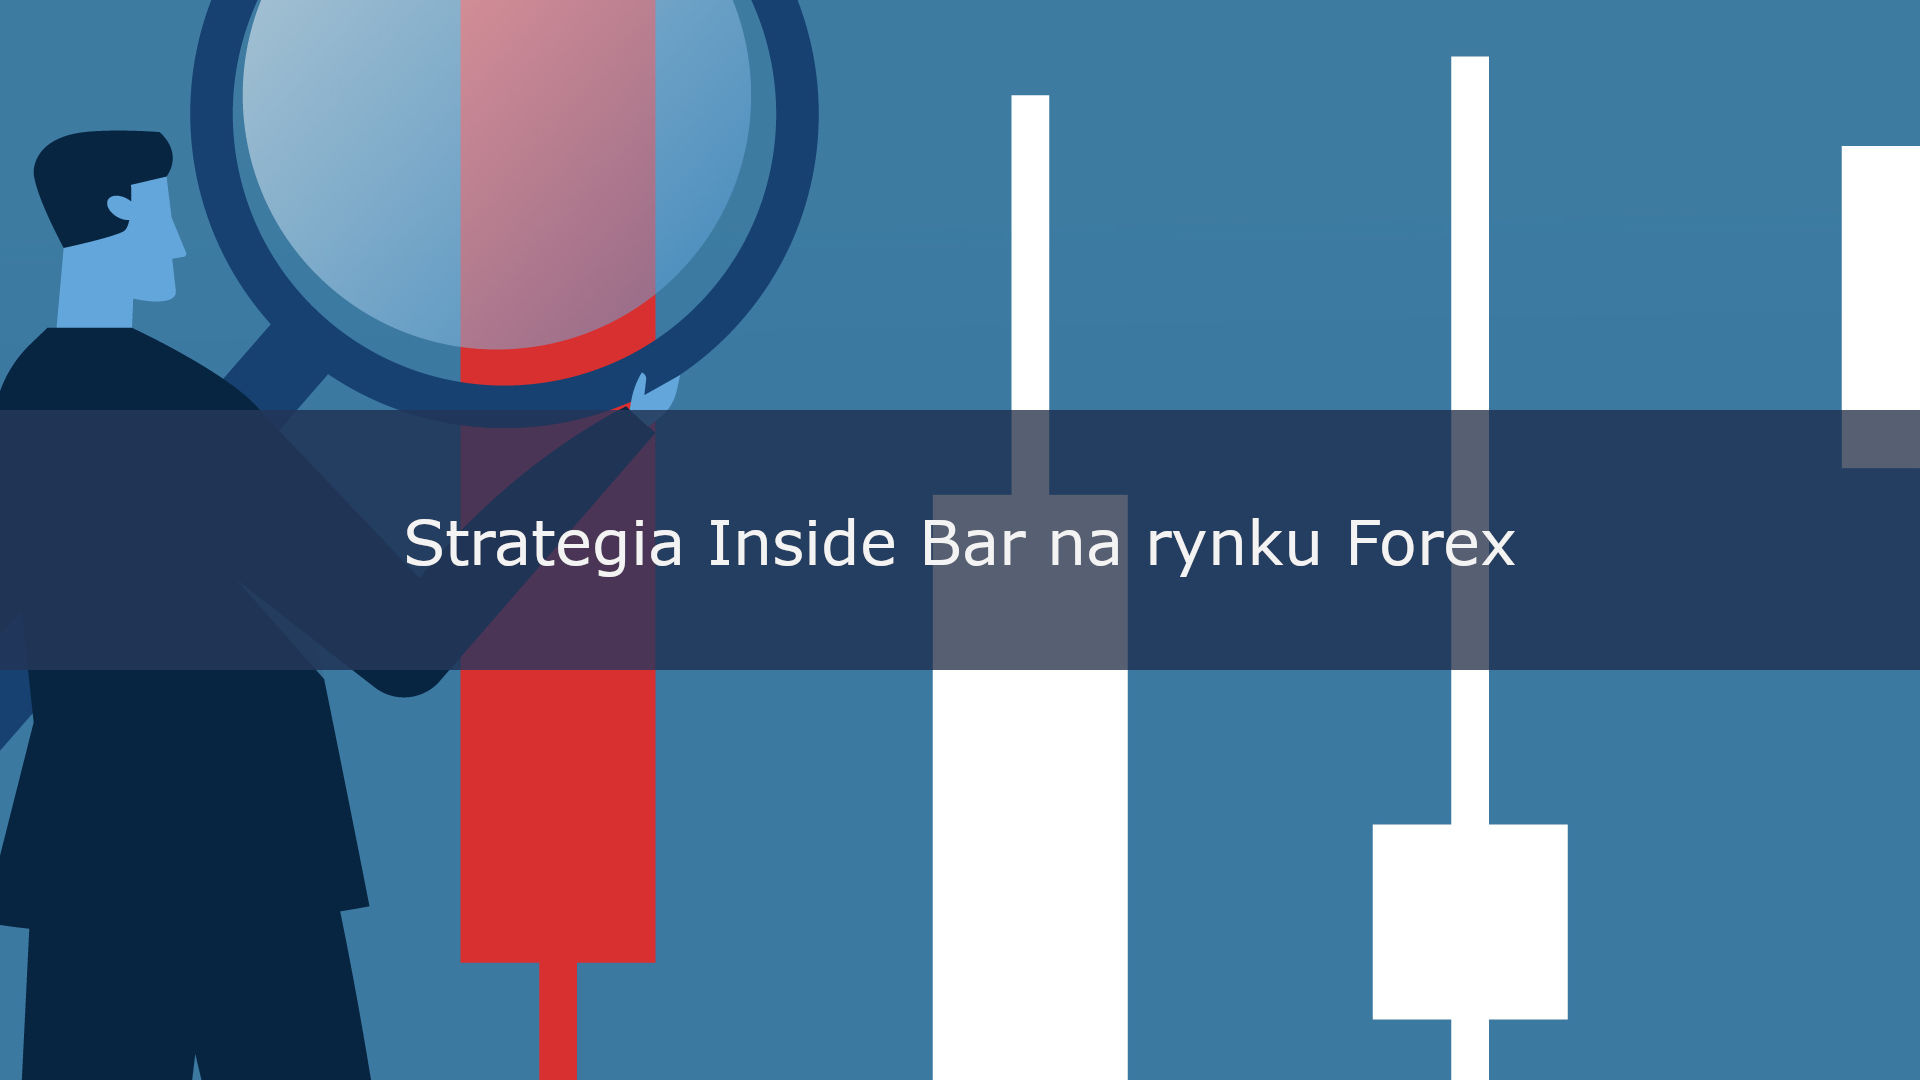 Strategia Inside Bar na rynku Forex